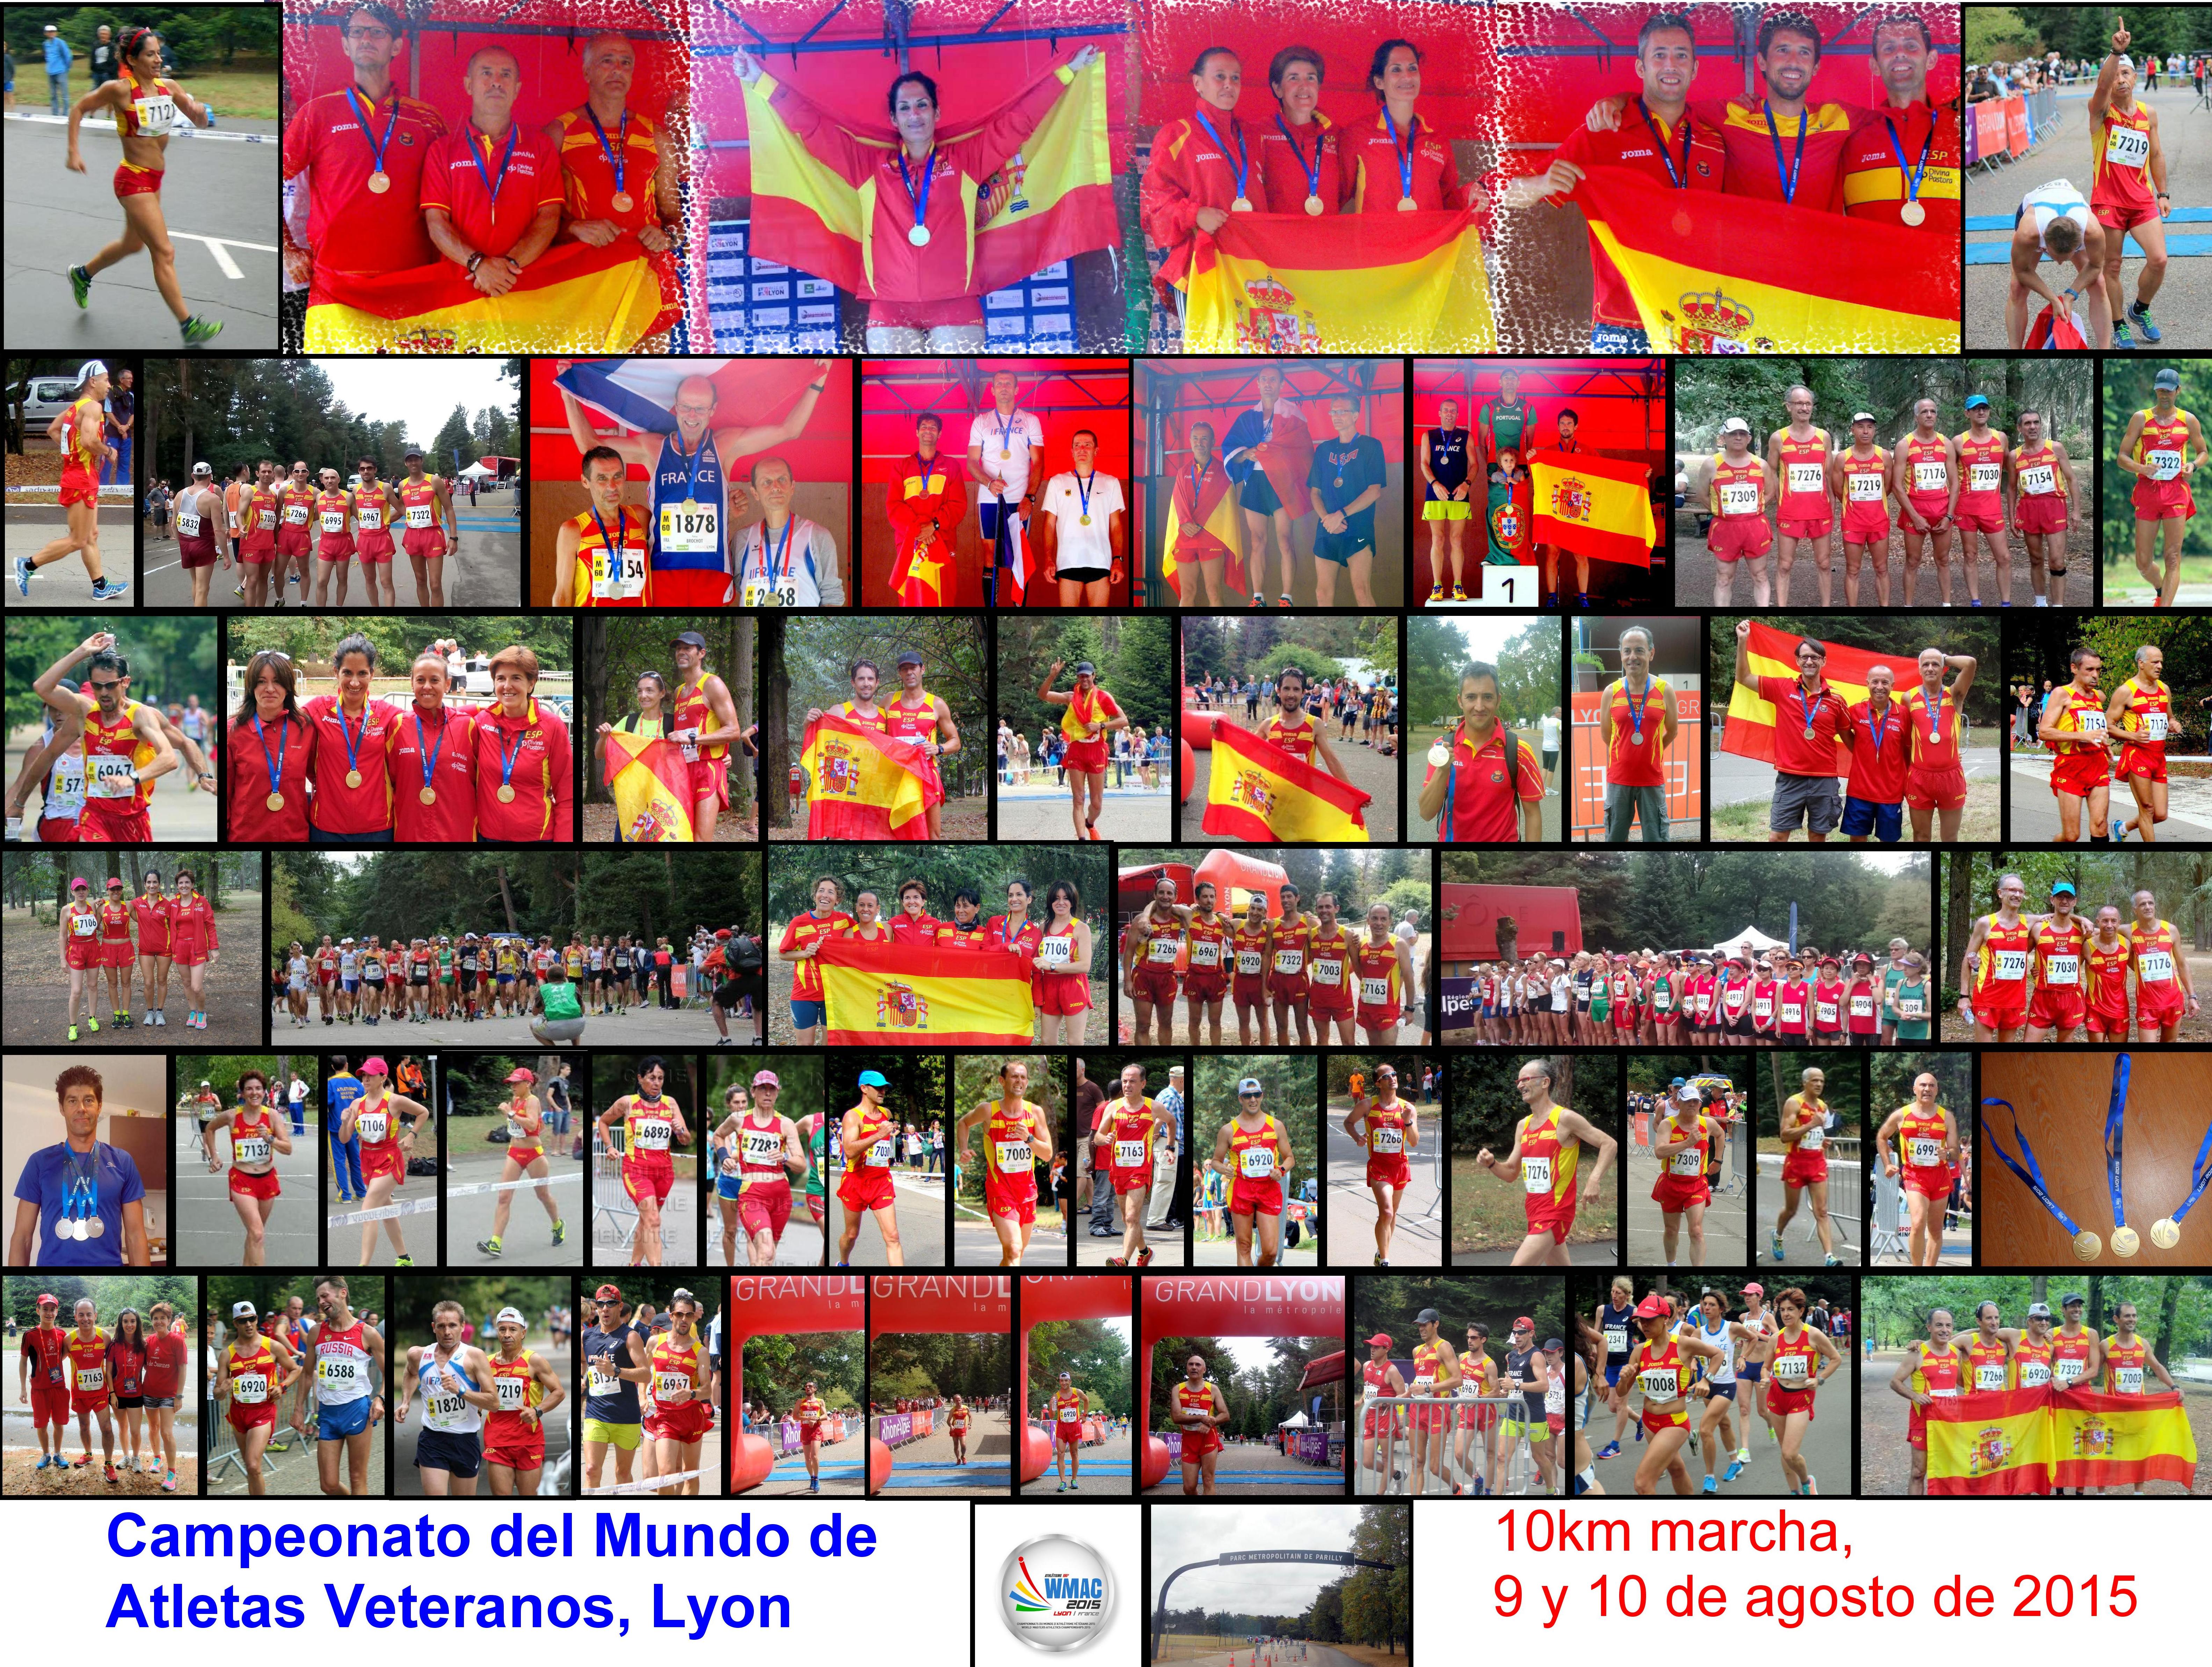 Dolores Marcos, Bicampeona Mundial, España 3 Oros y 1 Plata, Melo, Toro y Periáñez Platas y Domínguez Bronce 